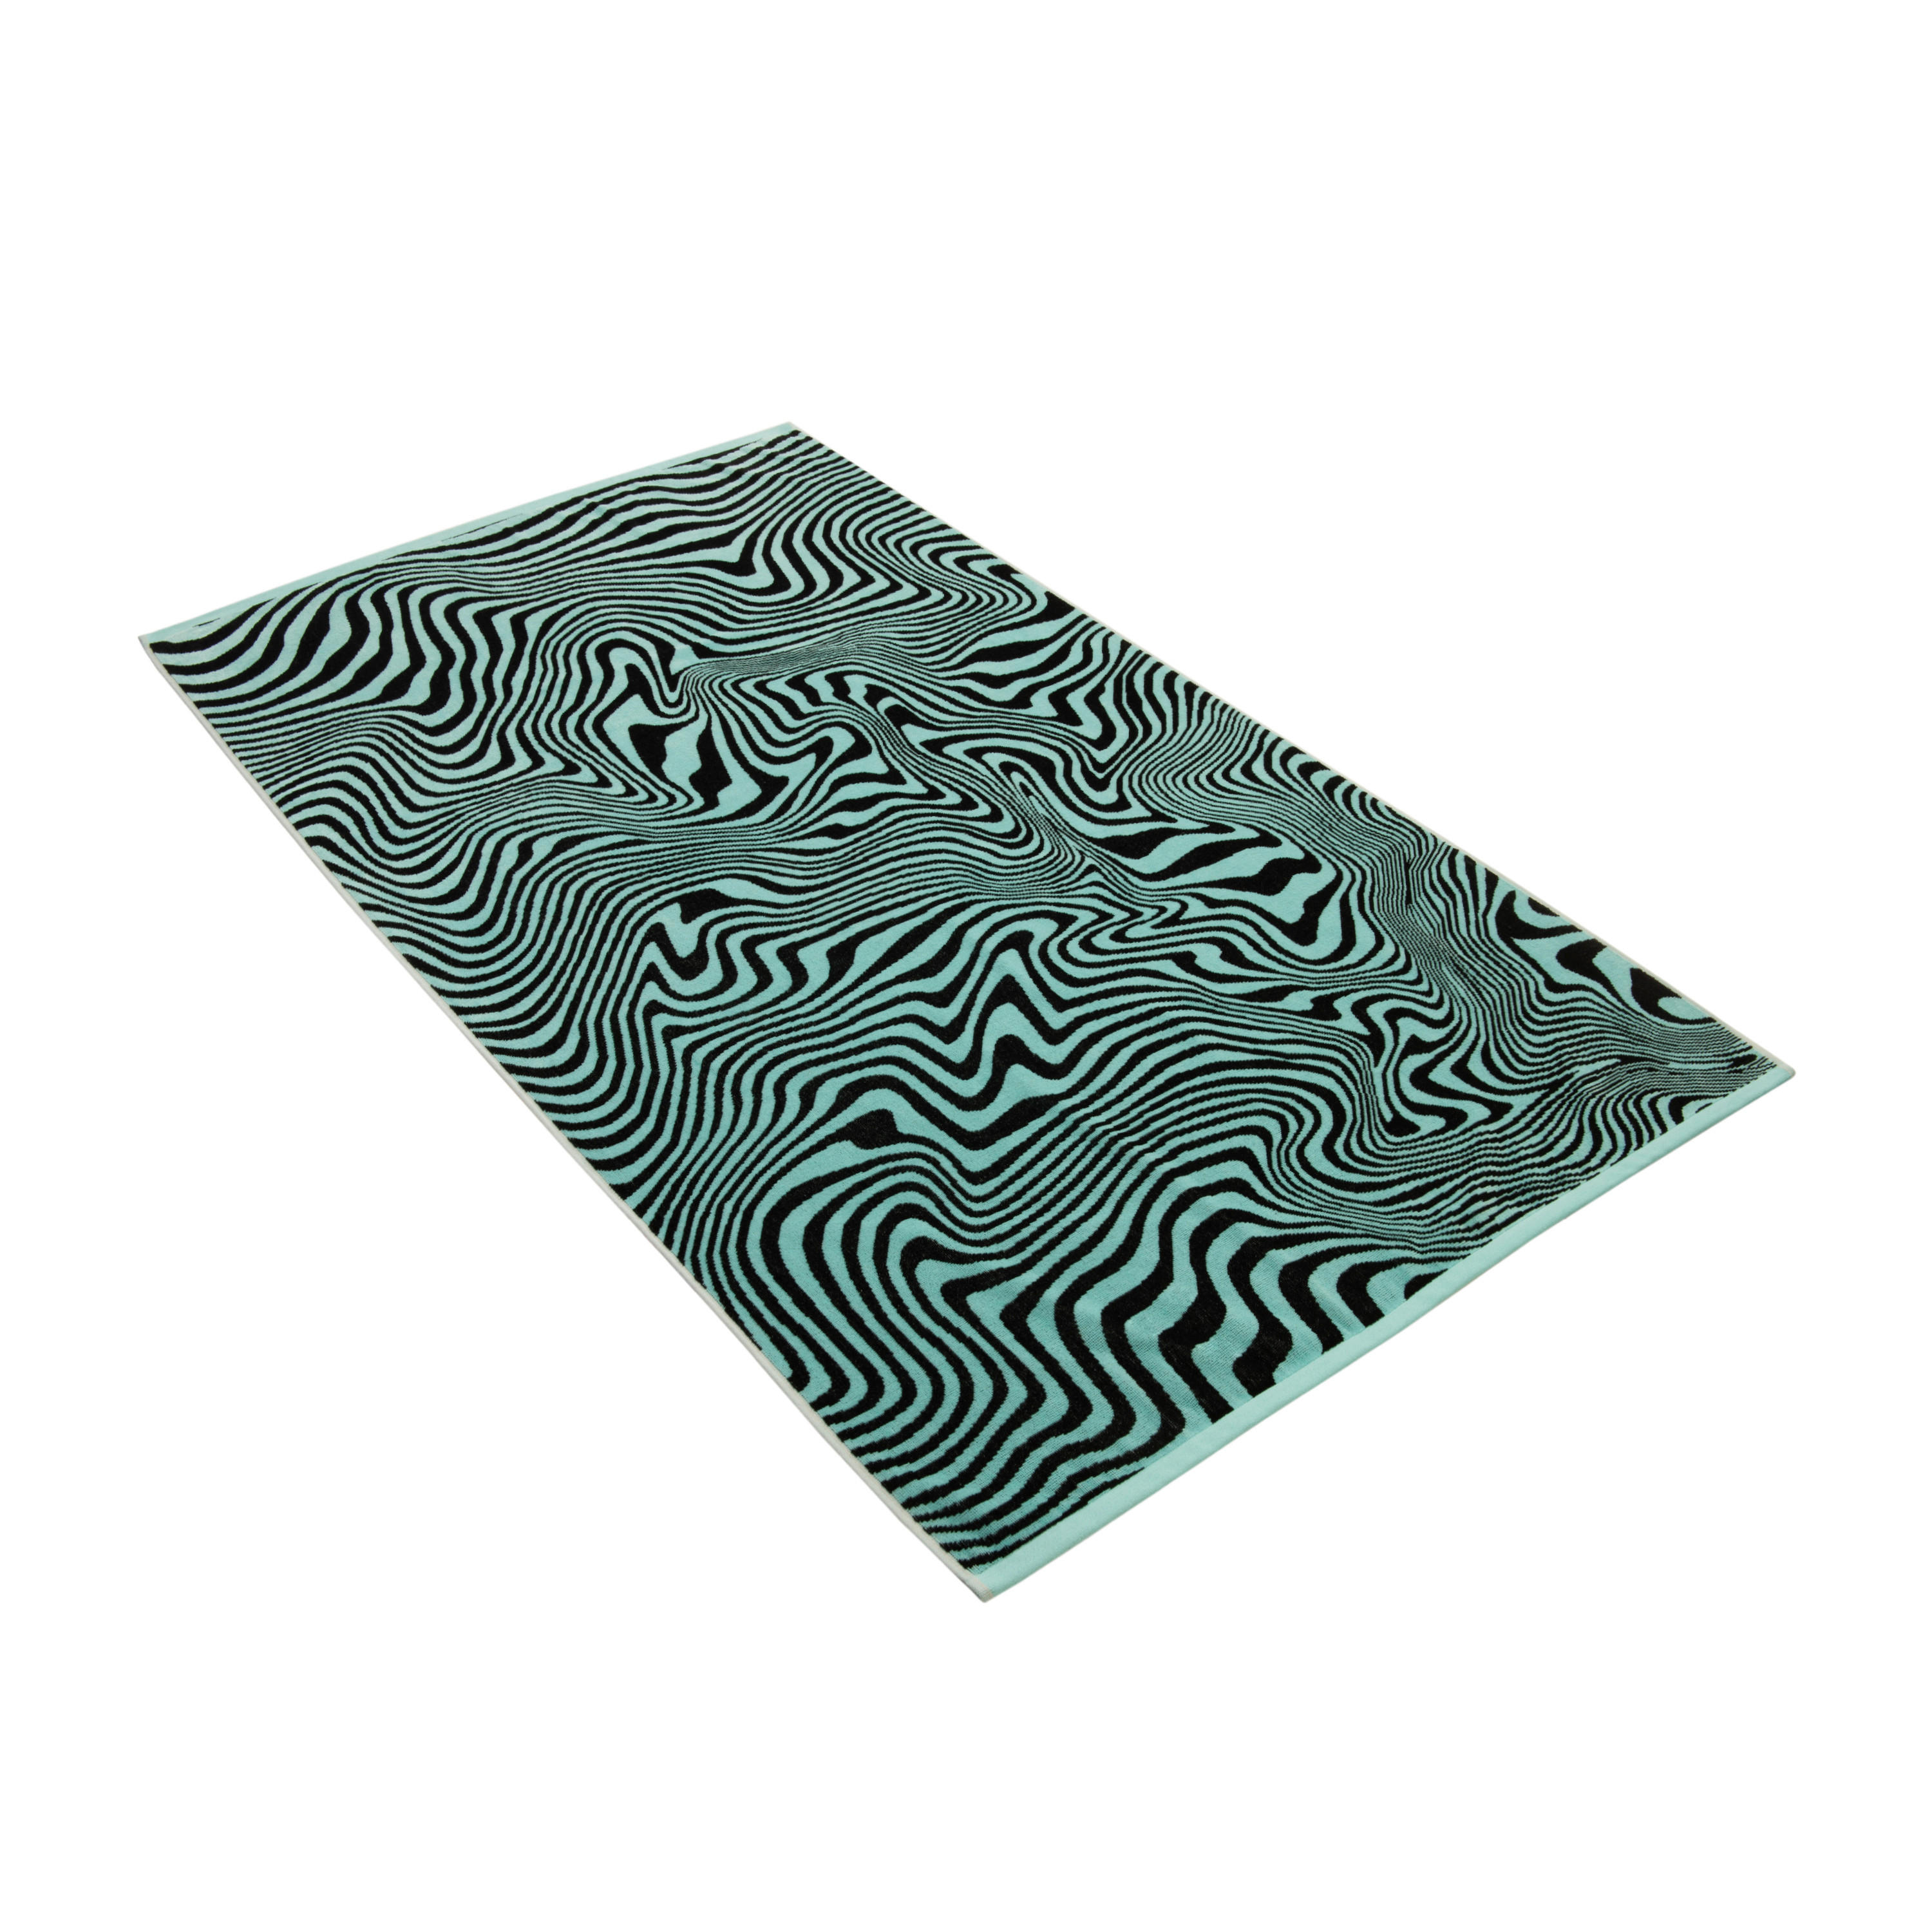 STRANDTUCH Swirl 100/180 cm  - Blau, KONVENTIONELL, Textil (100/180cm) - Vossen